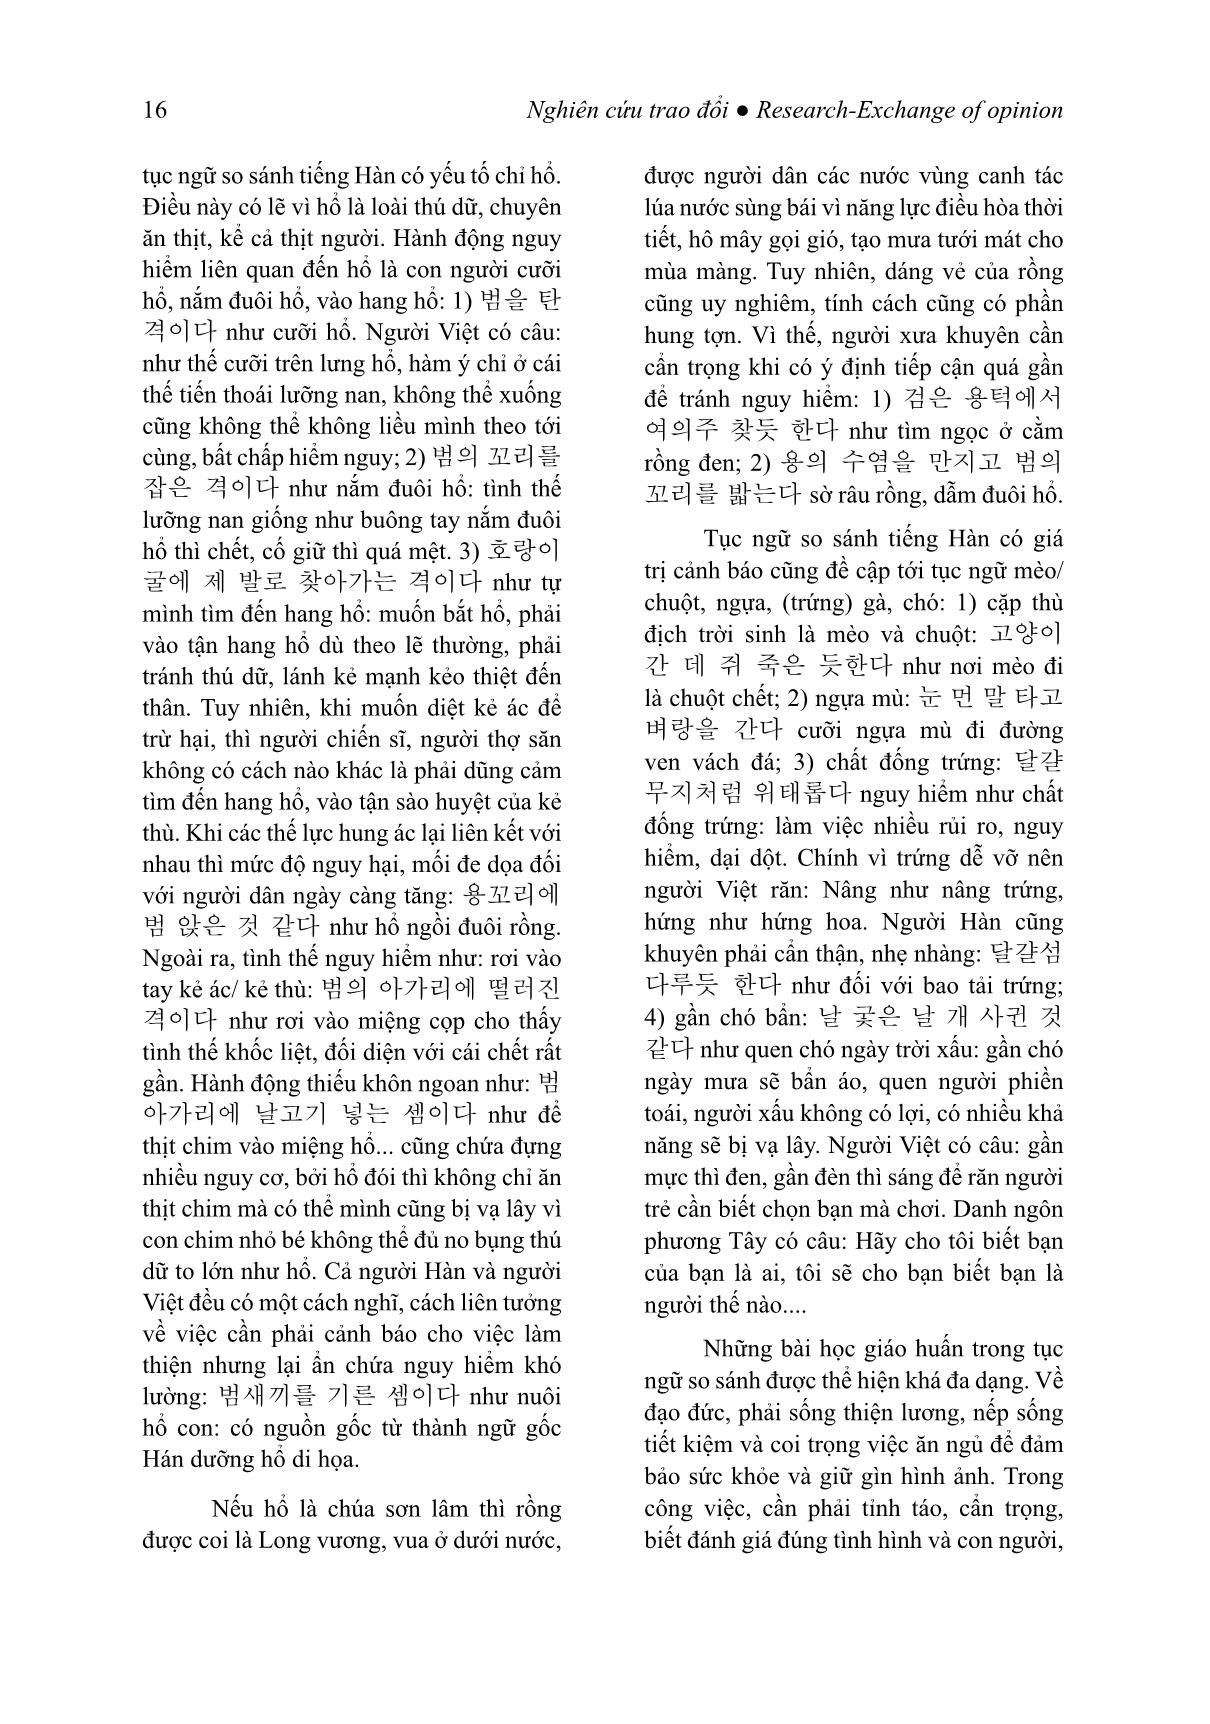 Giá trị giáo huấn của tục ngữ so sánh tiếng Hàn (Trọng tâm là các đơn vị có yếu tố chỉ con giáp) trang 7